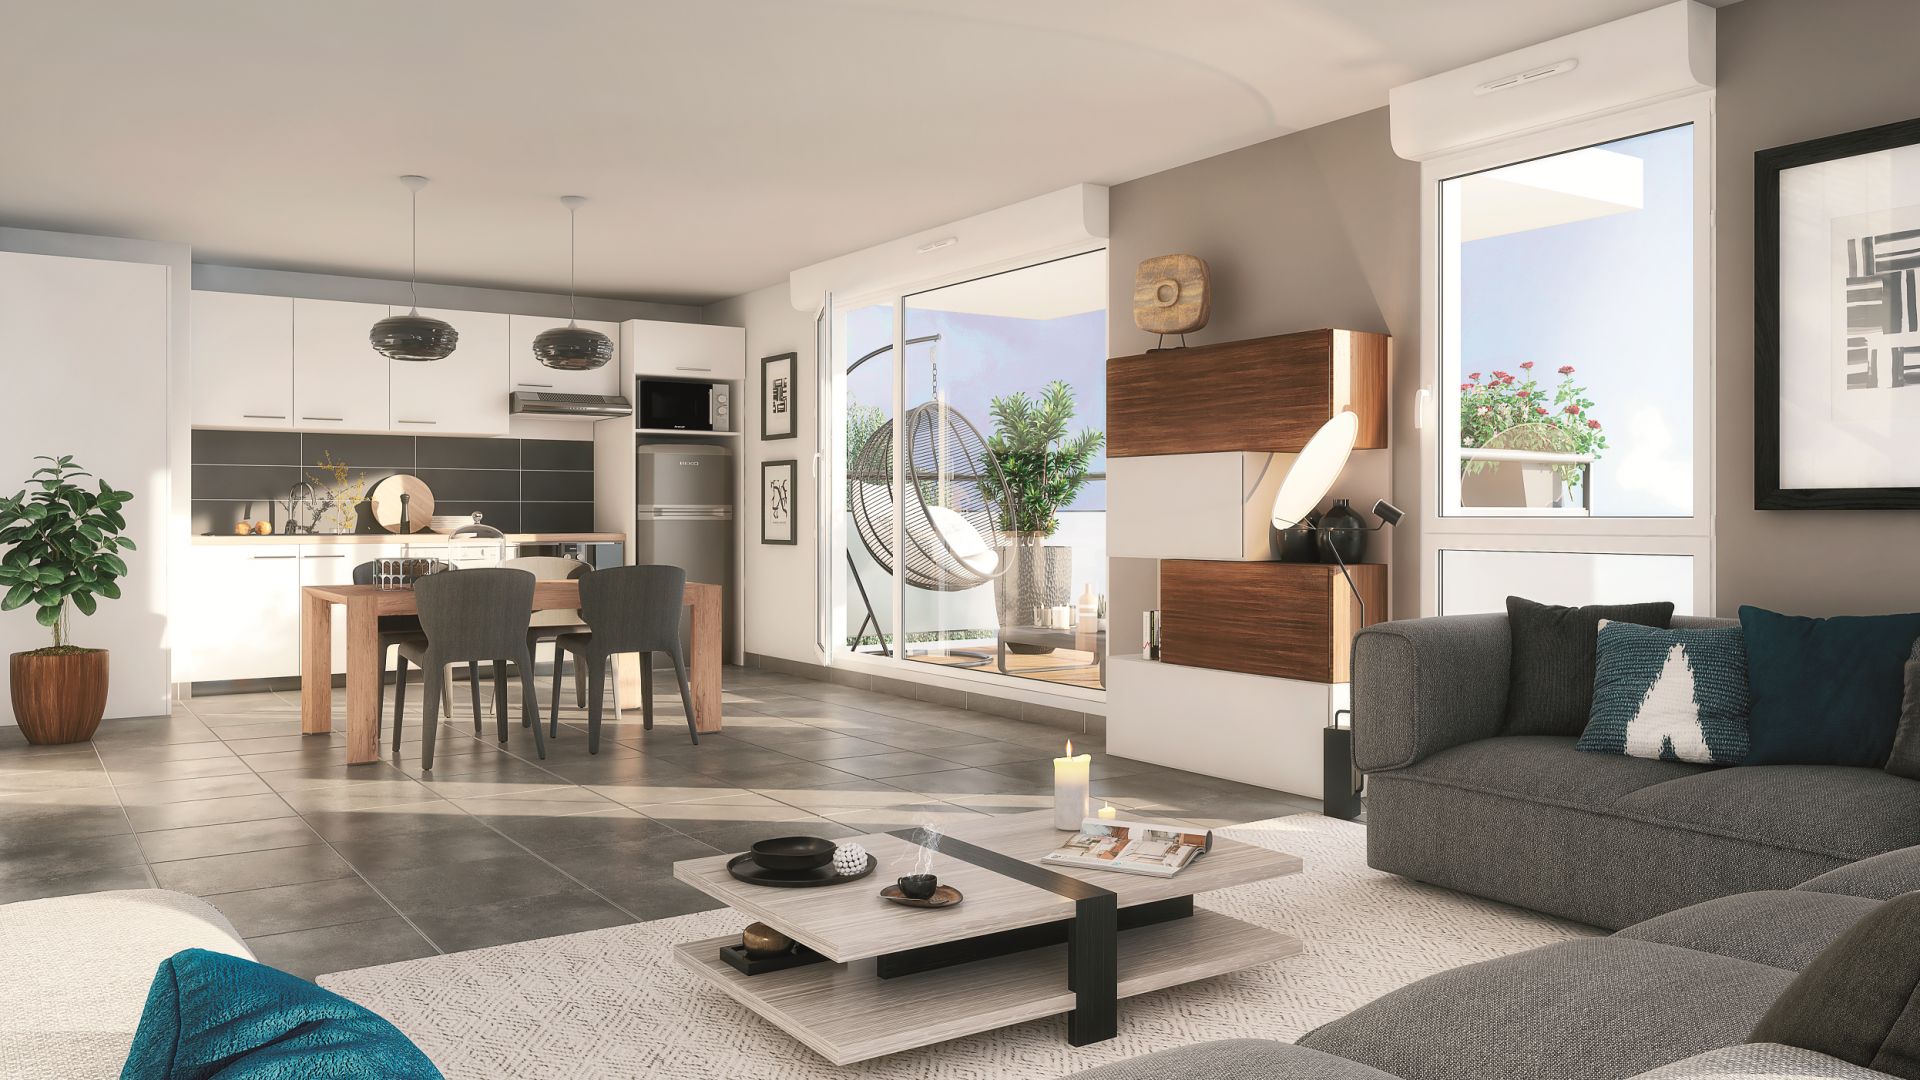 Greencity Immobilier - Résidence Le Belcanto - achat appartements neufs du T2 au T3 - Eaunes - Muret - 31600 - vue intérieure